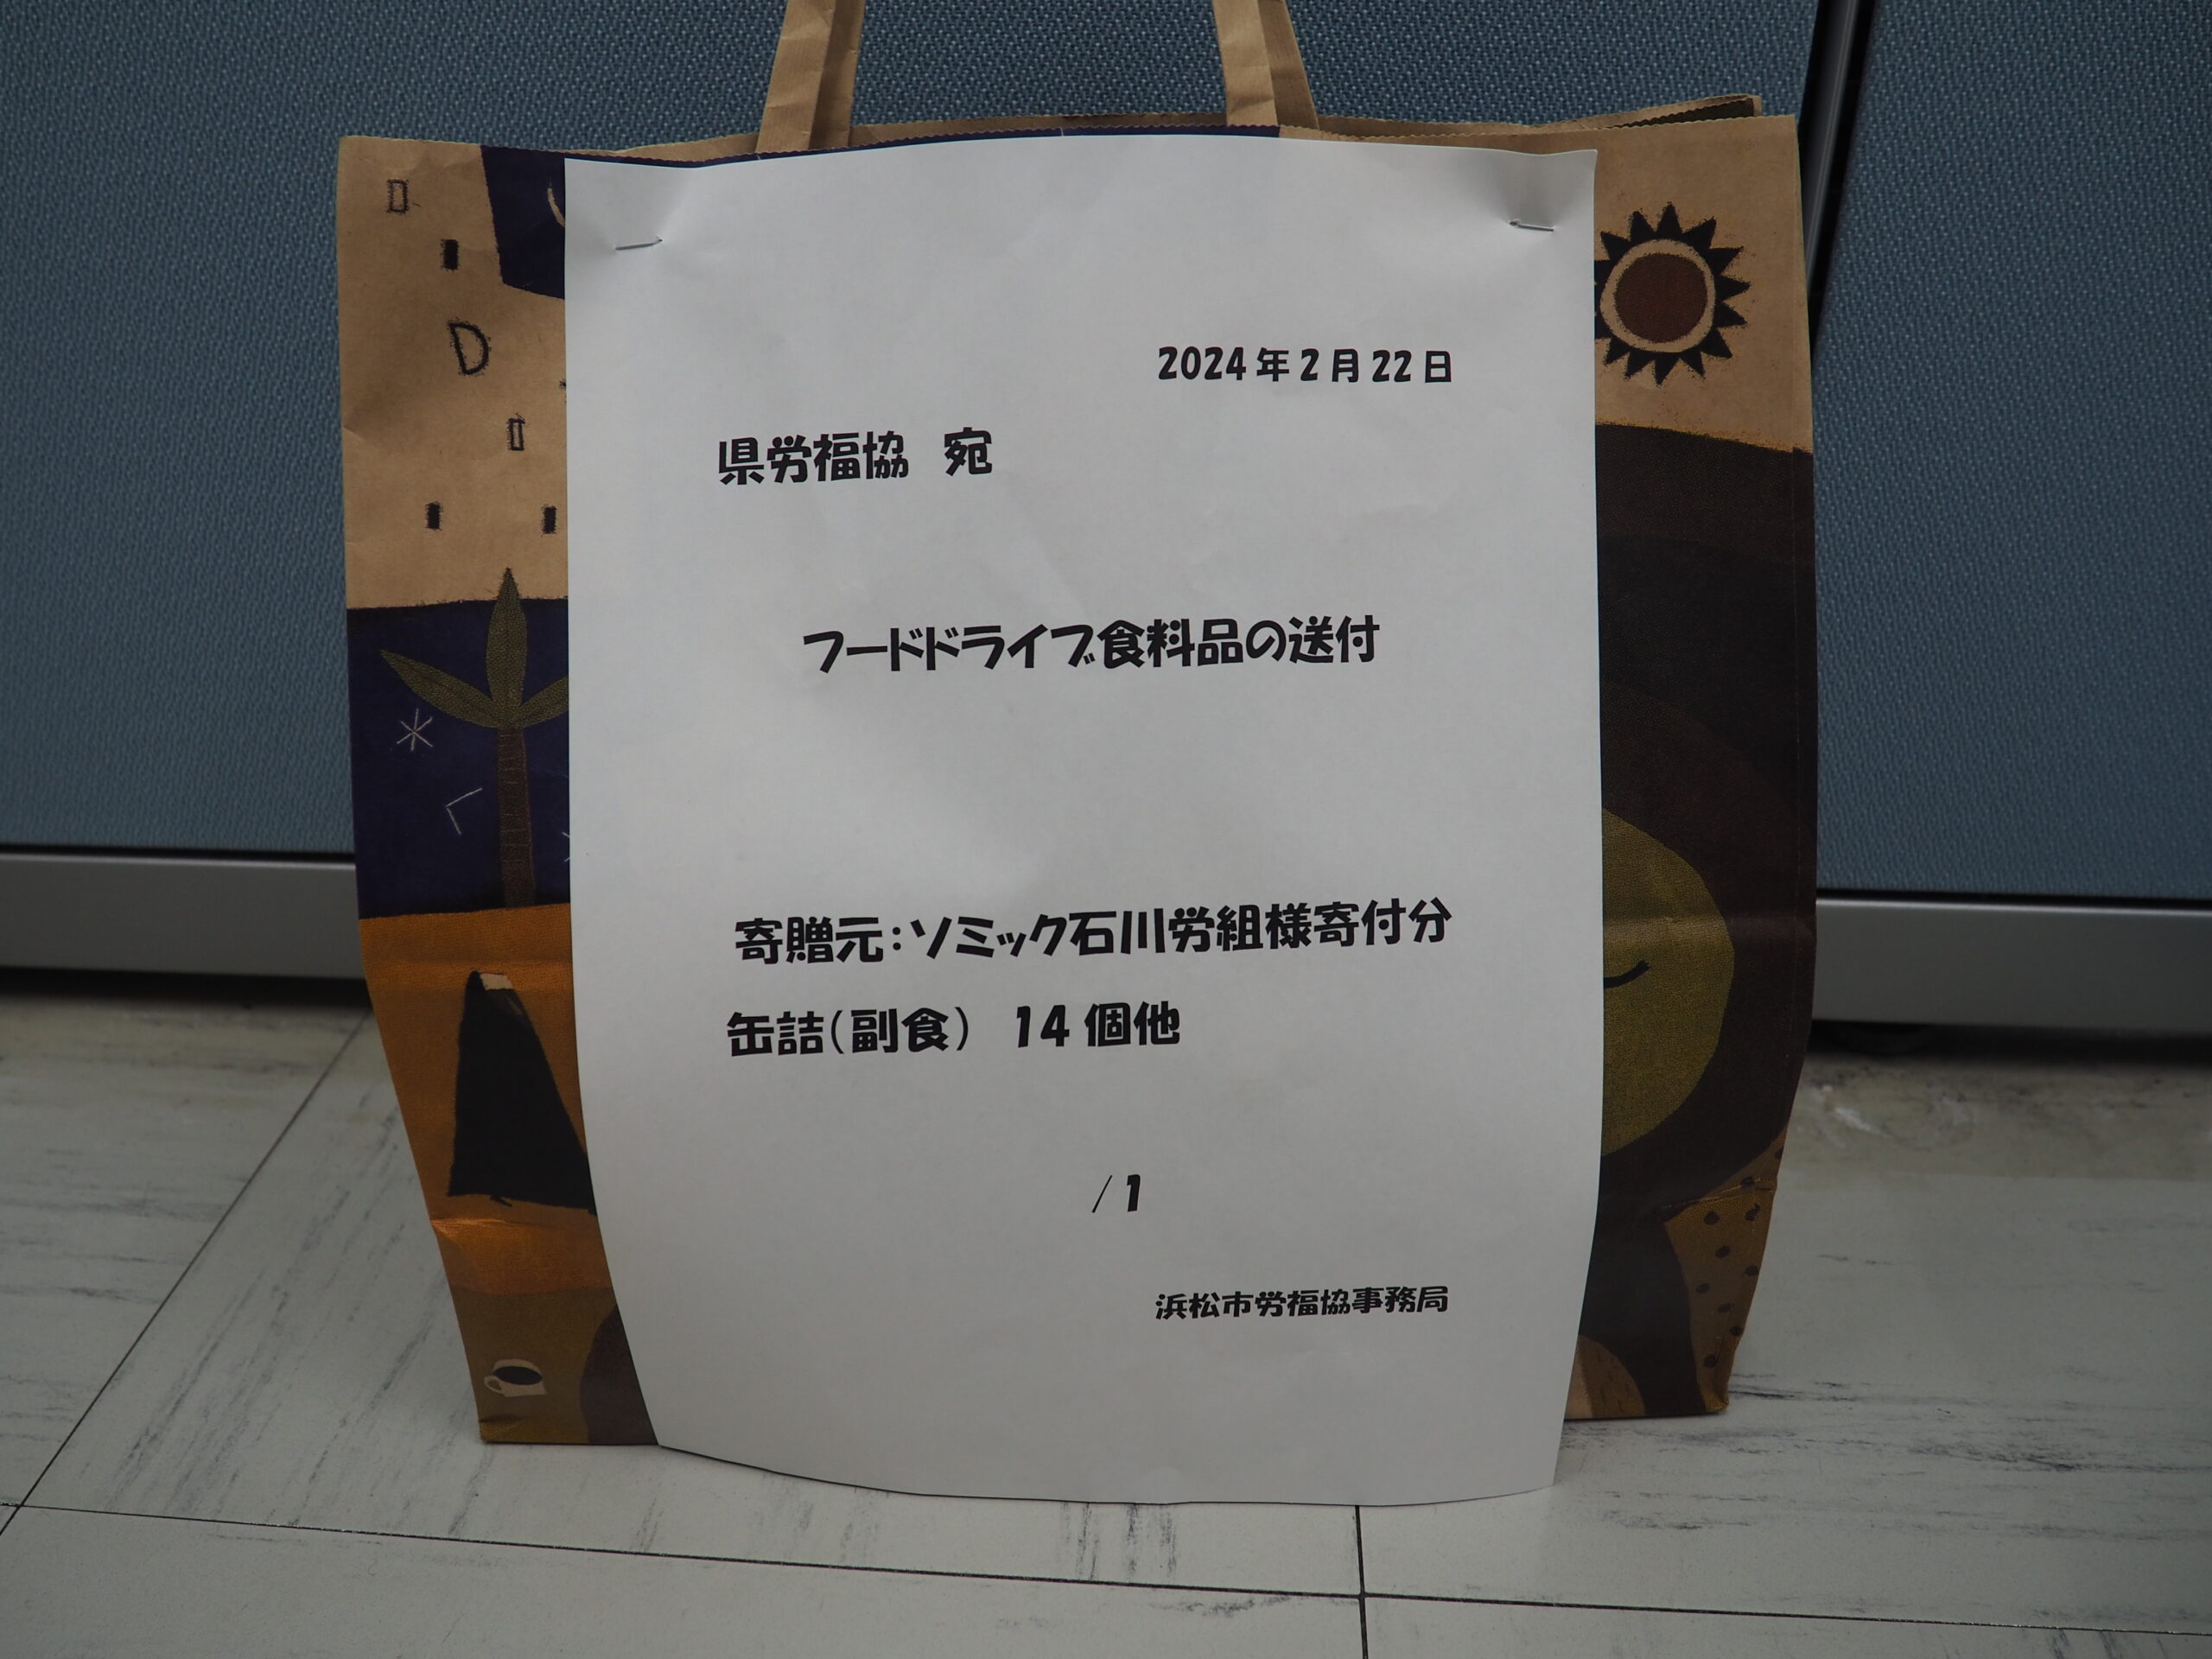 ソミック石川労働組合様・御殿場市社会福祉協議会様から食品を提供いただきました。